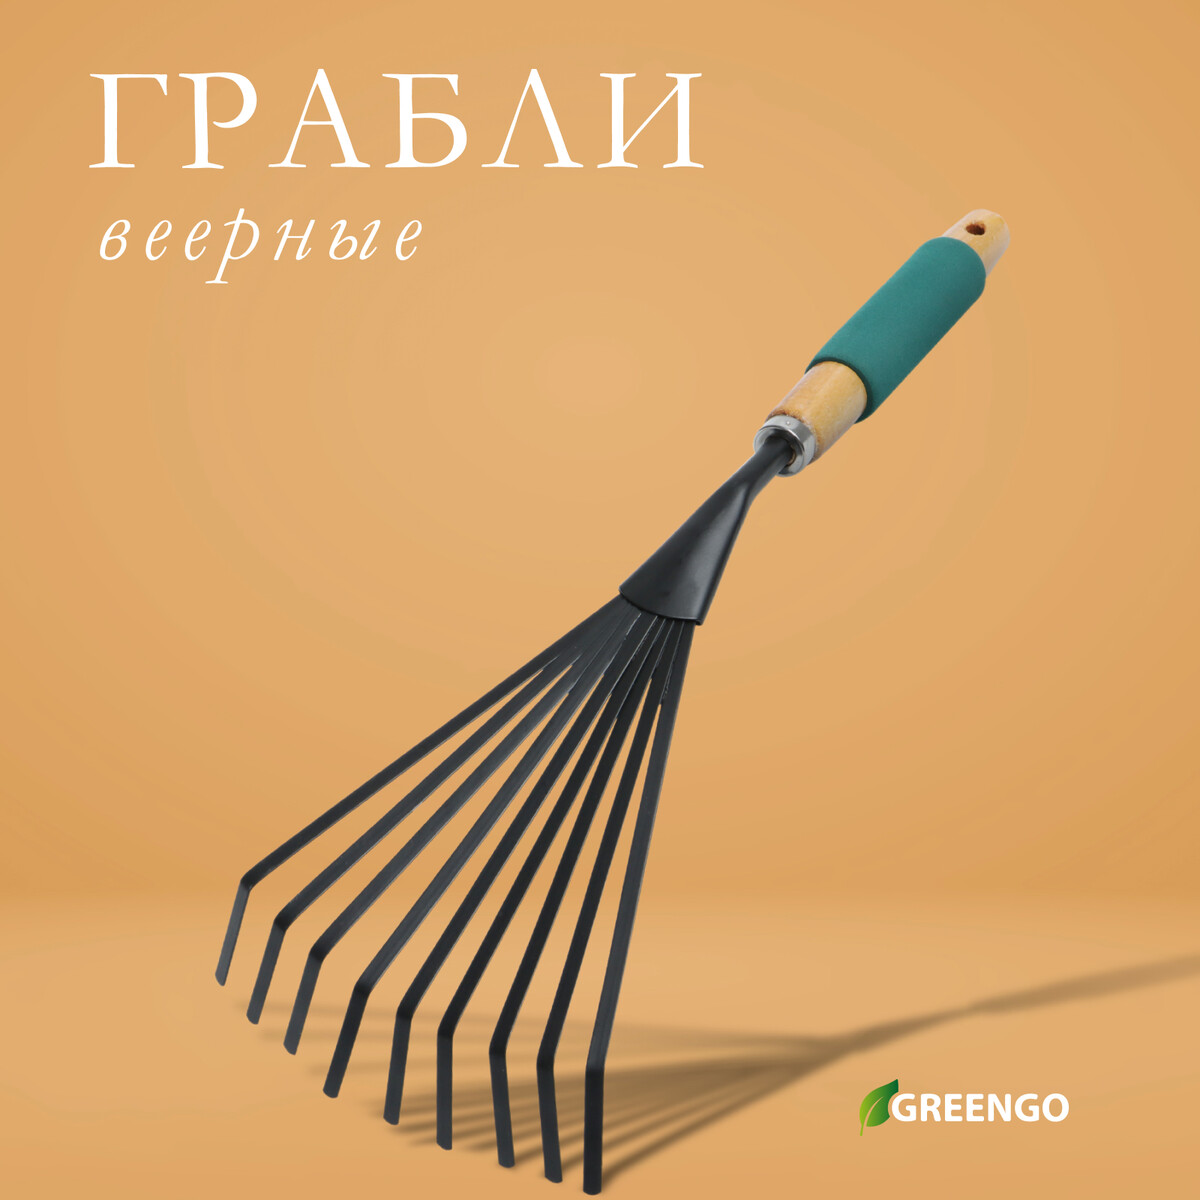 Грабли малые greengo, веерные, пластинчатые, 9 зубцов, длина 42 см, металл, деревянная ручка с поролоном